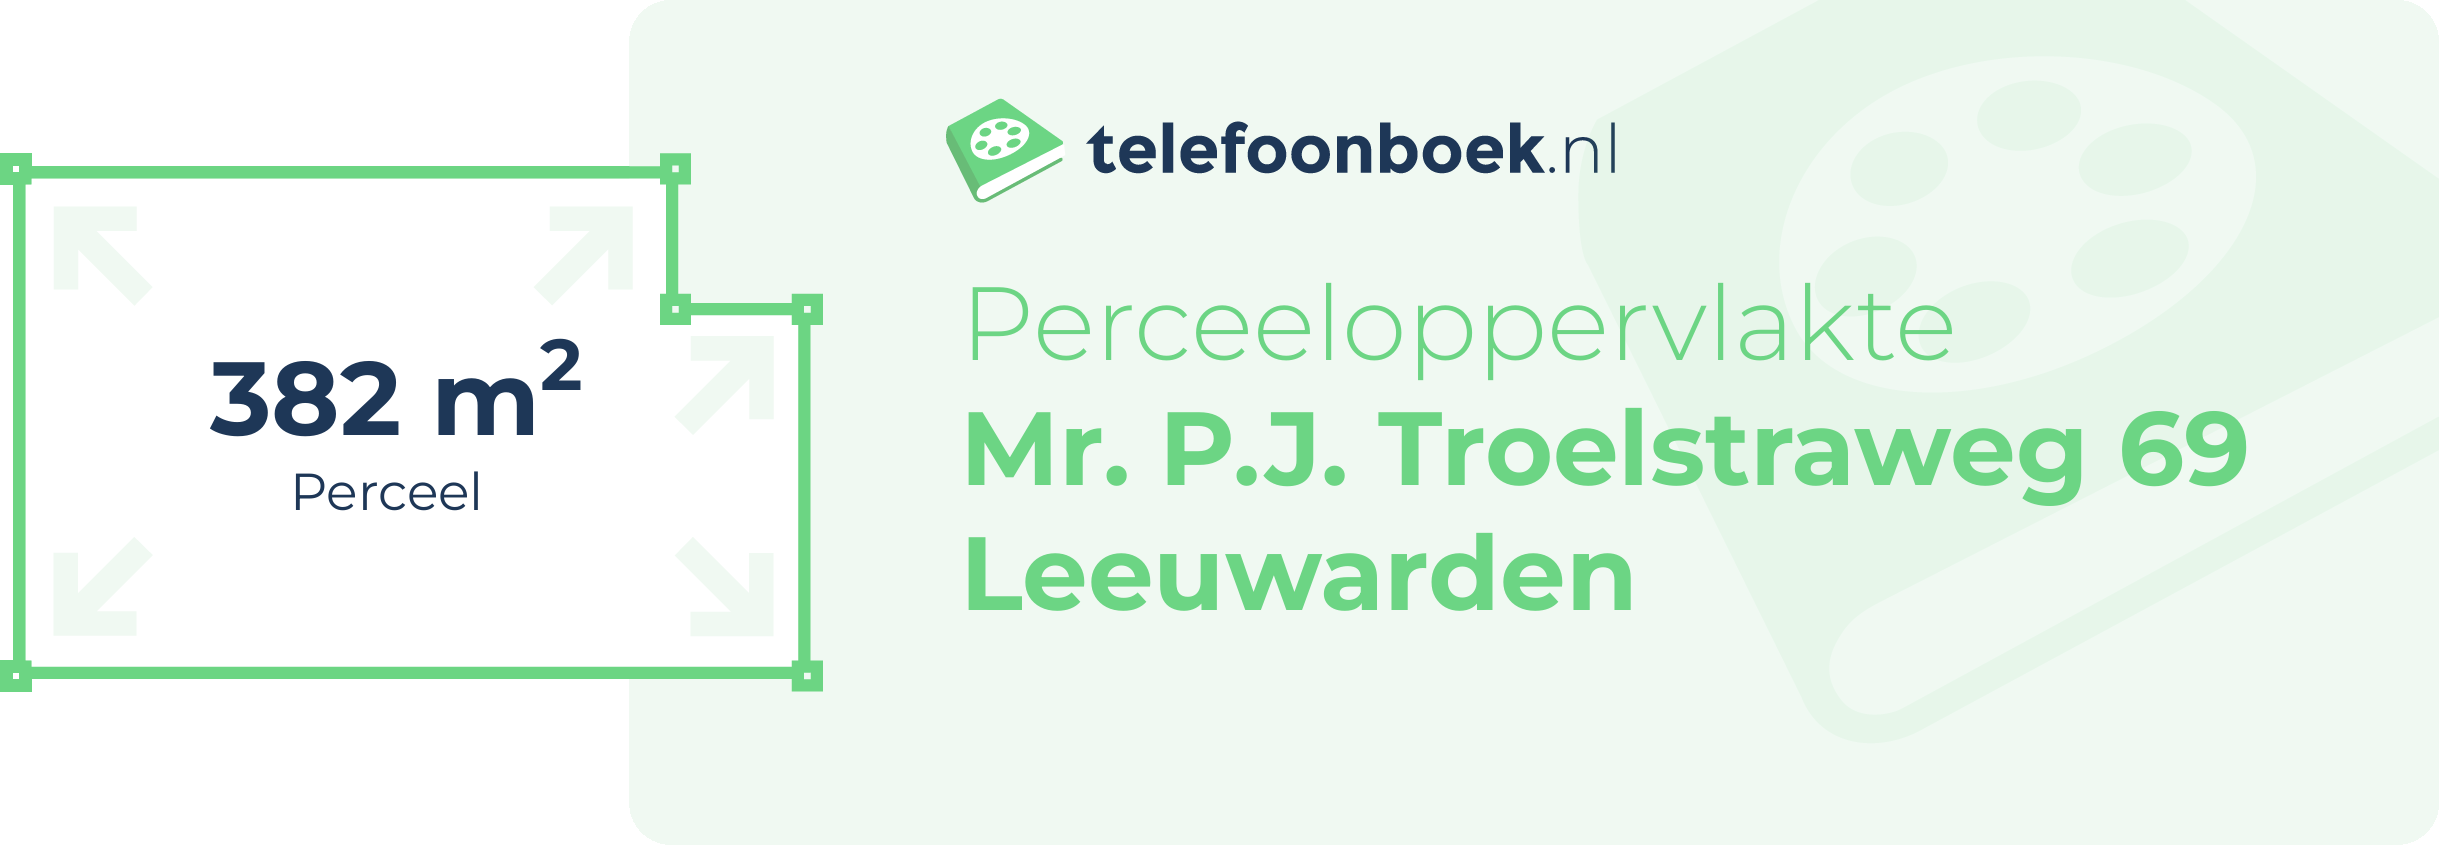 Perceeloppervlakte Mr. P.J. Troelstraweg 69 Leeuwarden